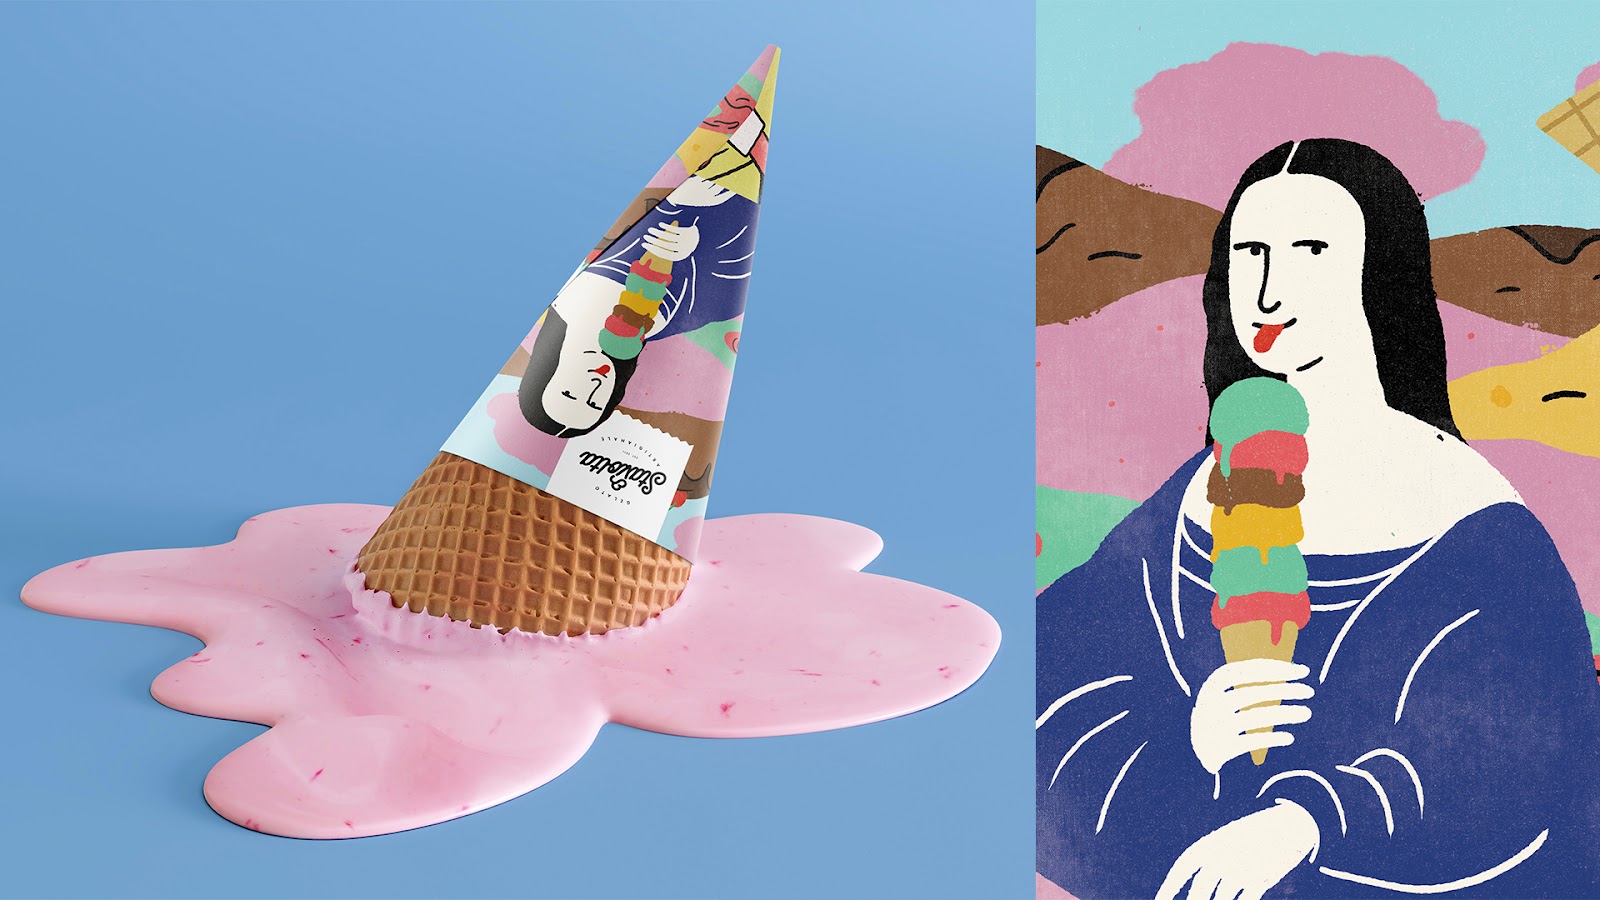 埃及Stavolta冰淇淋品牌包装设计